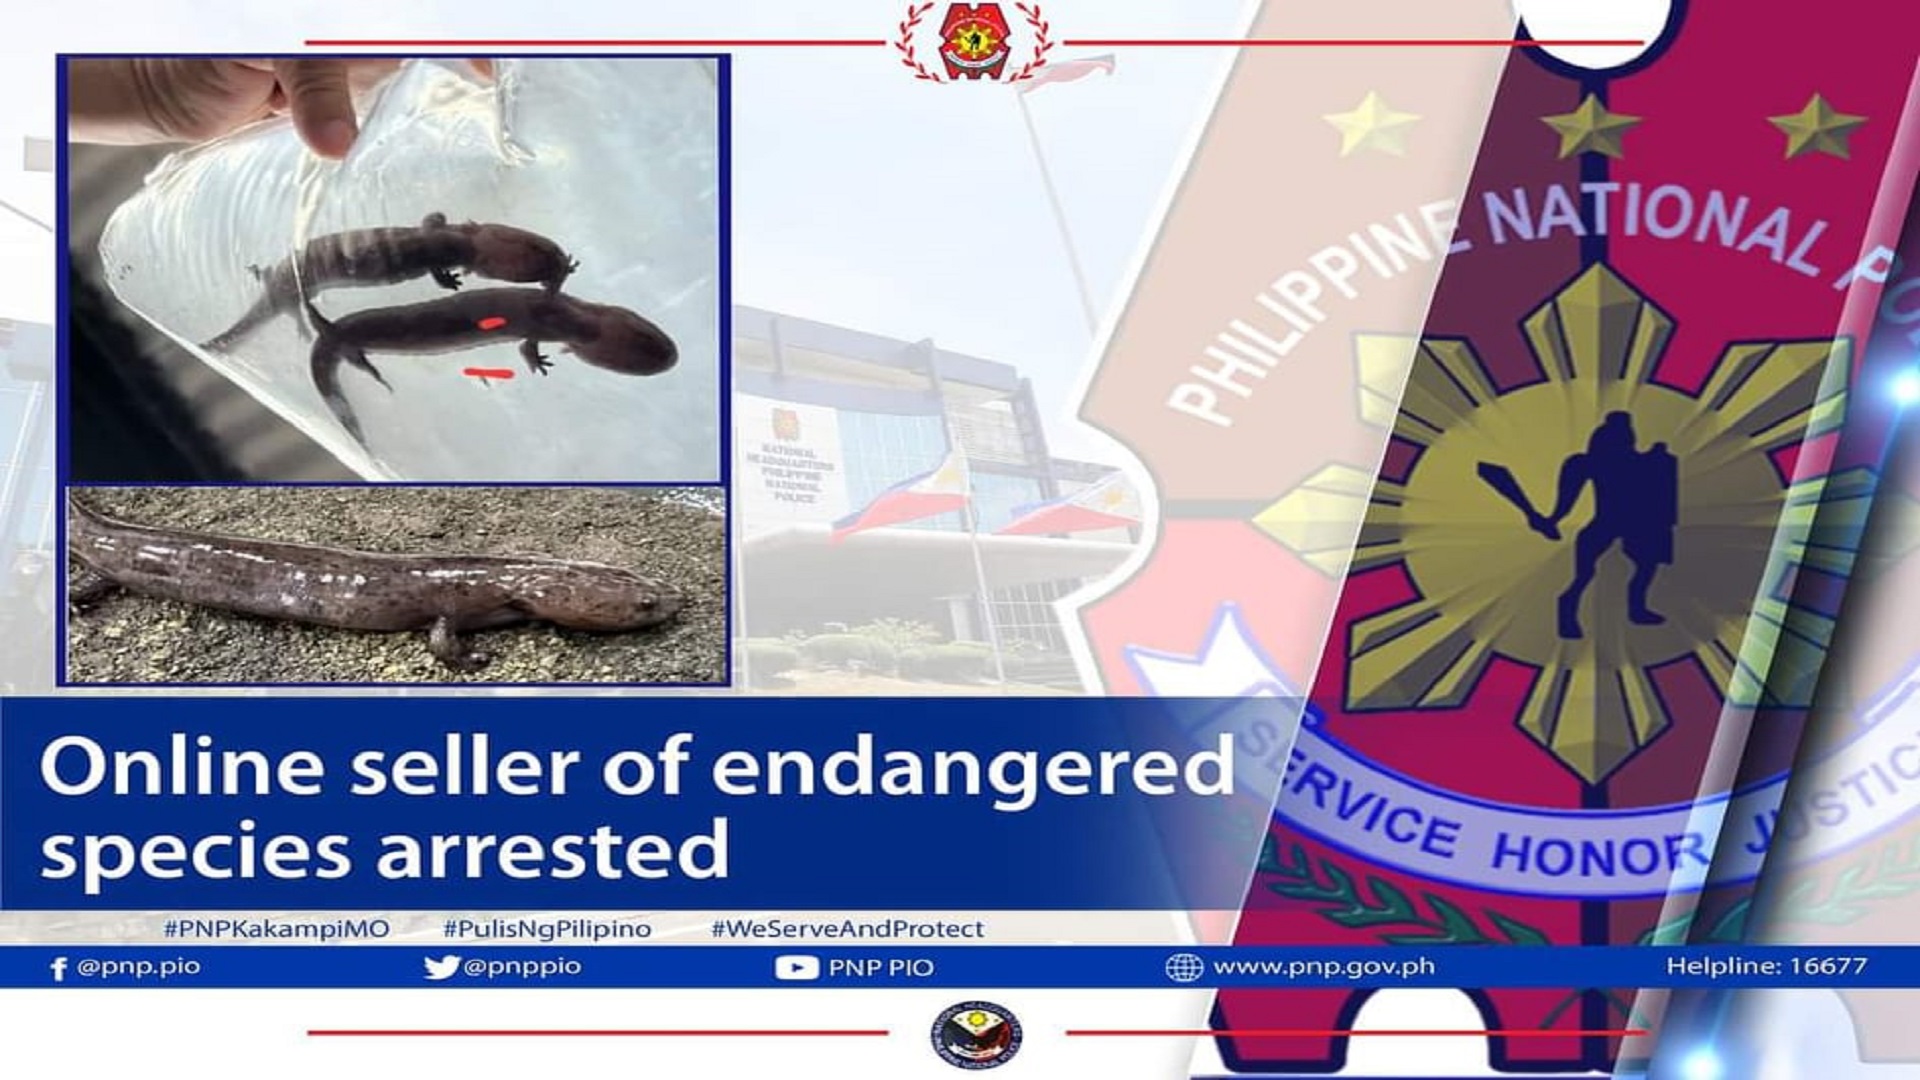 Lalaking nagbebenta ng endangered species online, arestado ng PNP